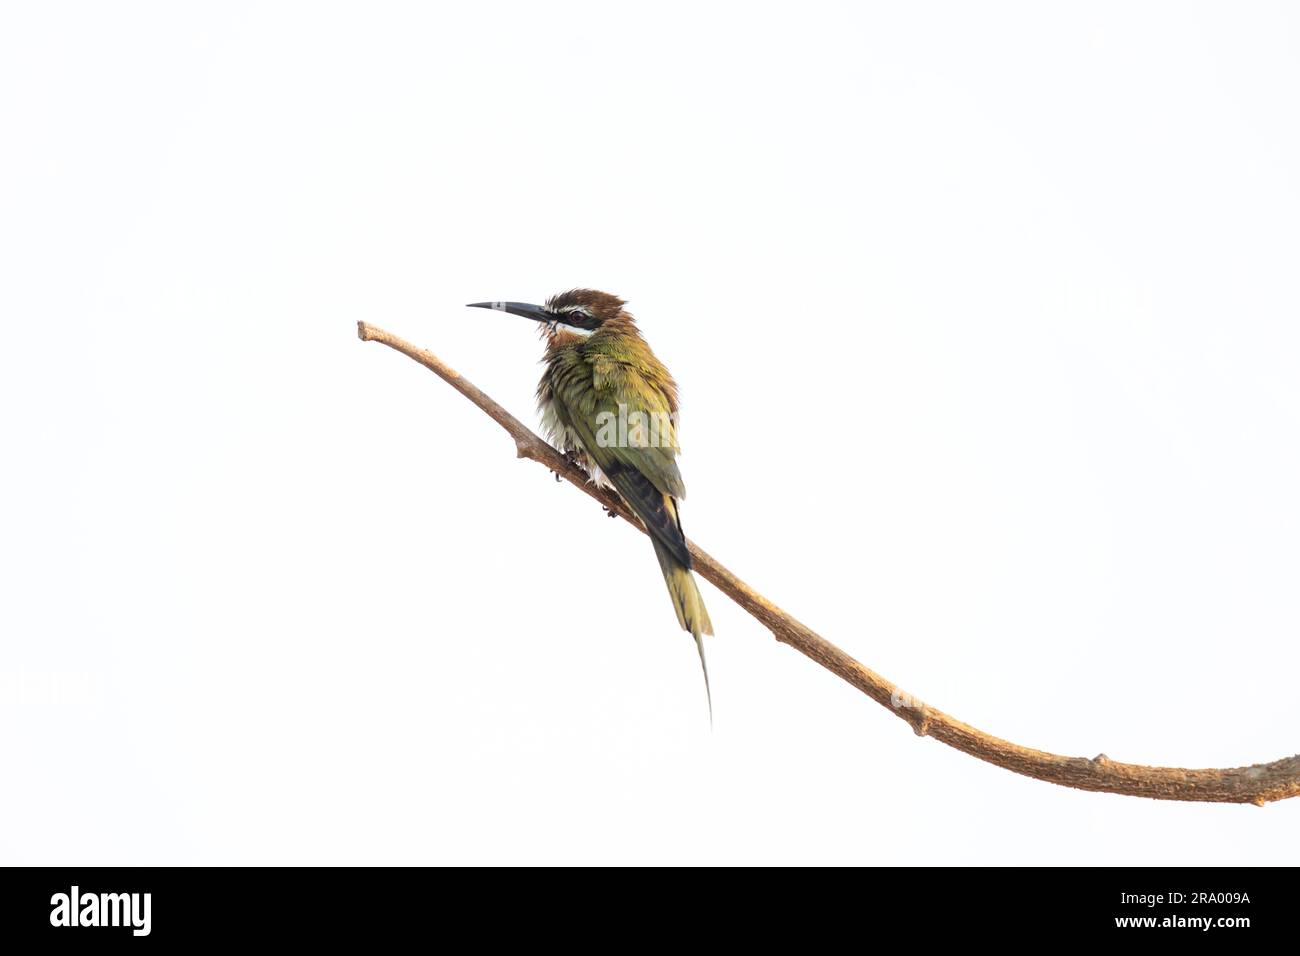 Il mangiatore di api d'oliva è seduto sul ramo. Merops superciliosus nel parco del Madagascar. Piccolo uccello verde con becco lungo e striscia bianca sulla testa. Foto Stock